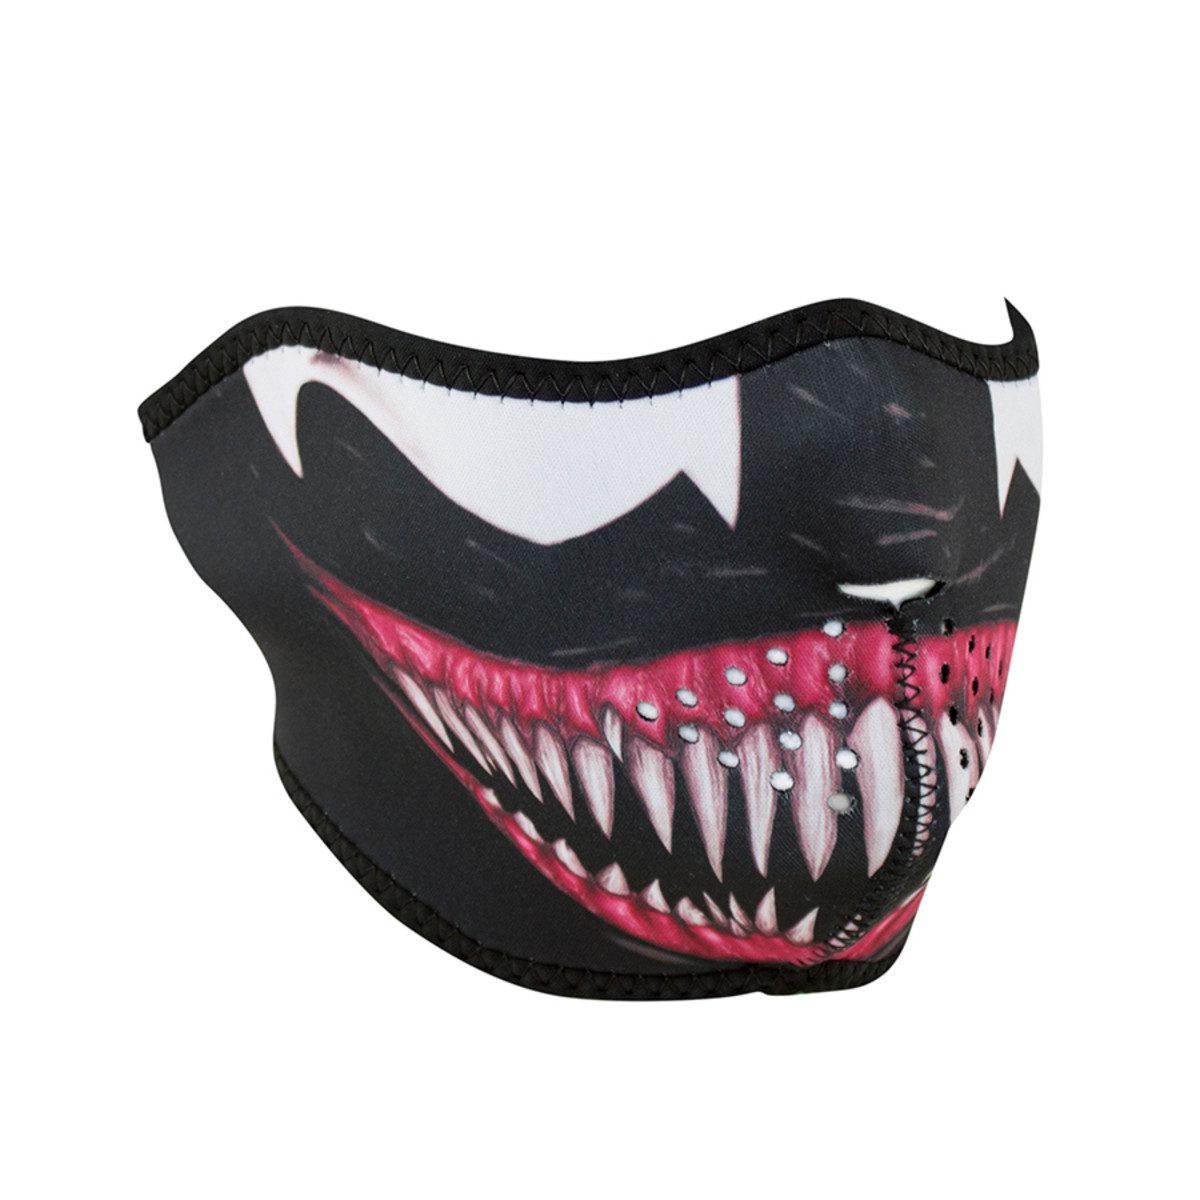 Zan Headgear Neoprene Half-Face Mask - Toxic